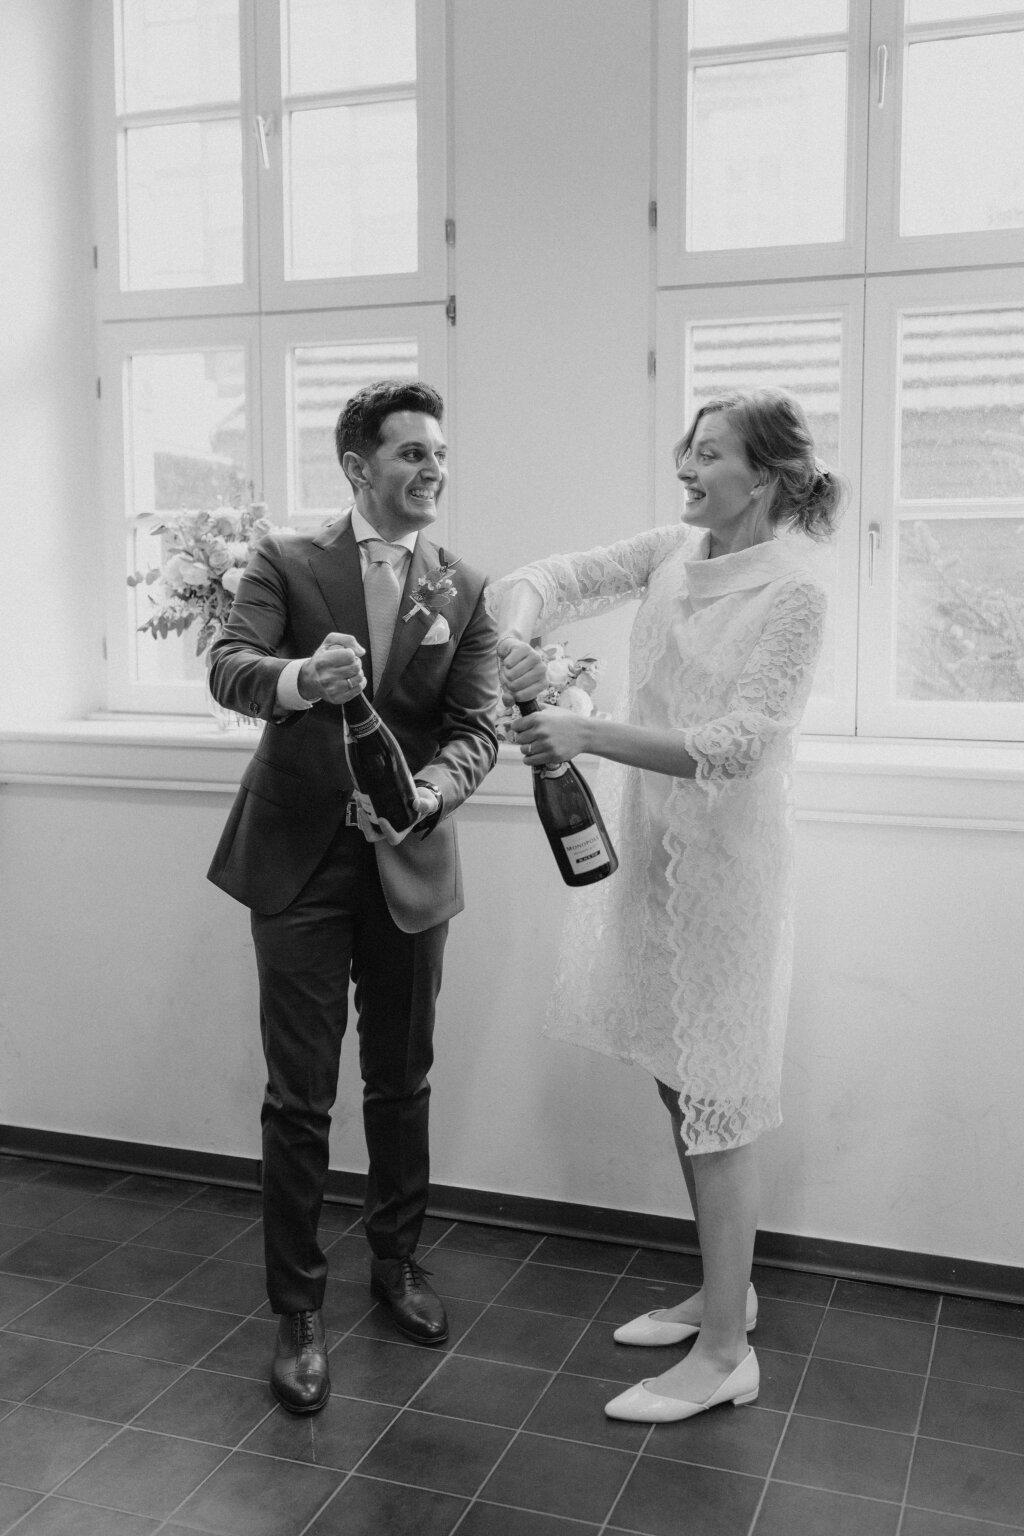 Ein Hochzeitspaar steht vor einer Fensterfront und öffnet jeweils eine Flasche Champagner. Dabei schauen sie sich lachend an.